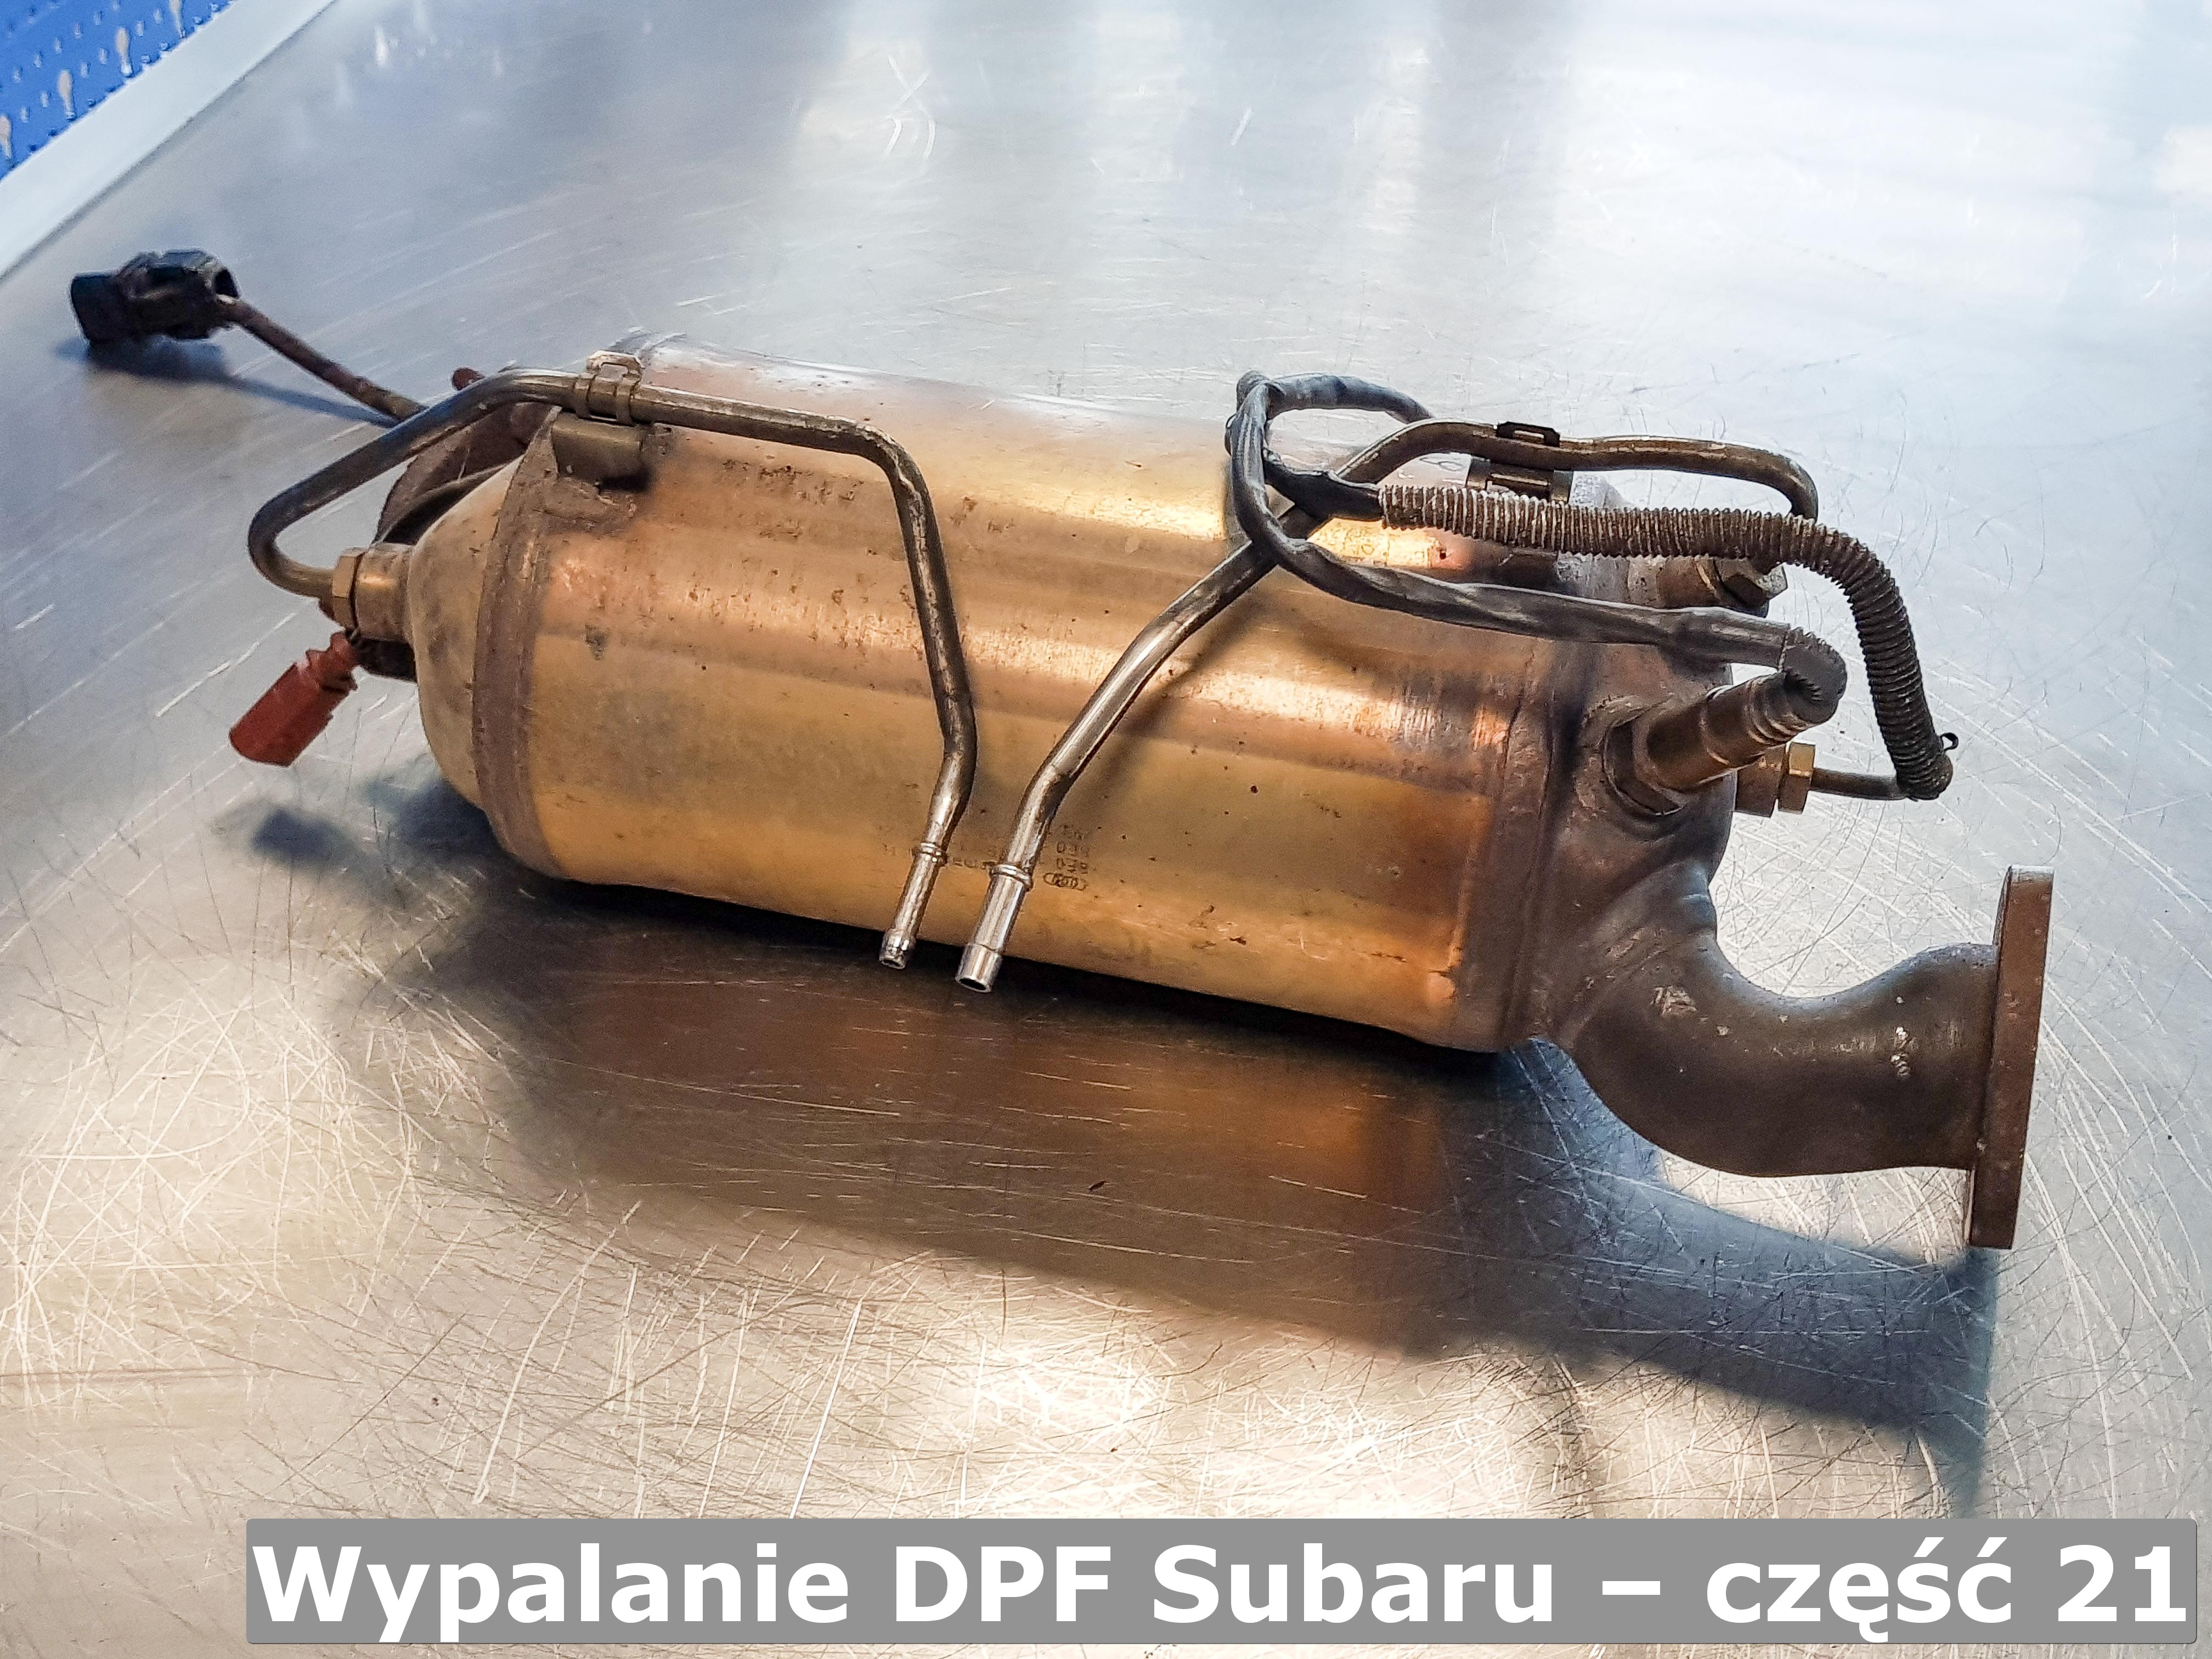 Wypalanie Dpf Subaru – Część 21